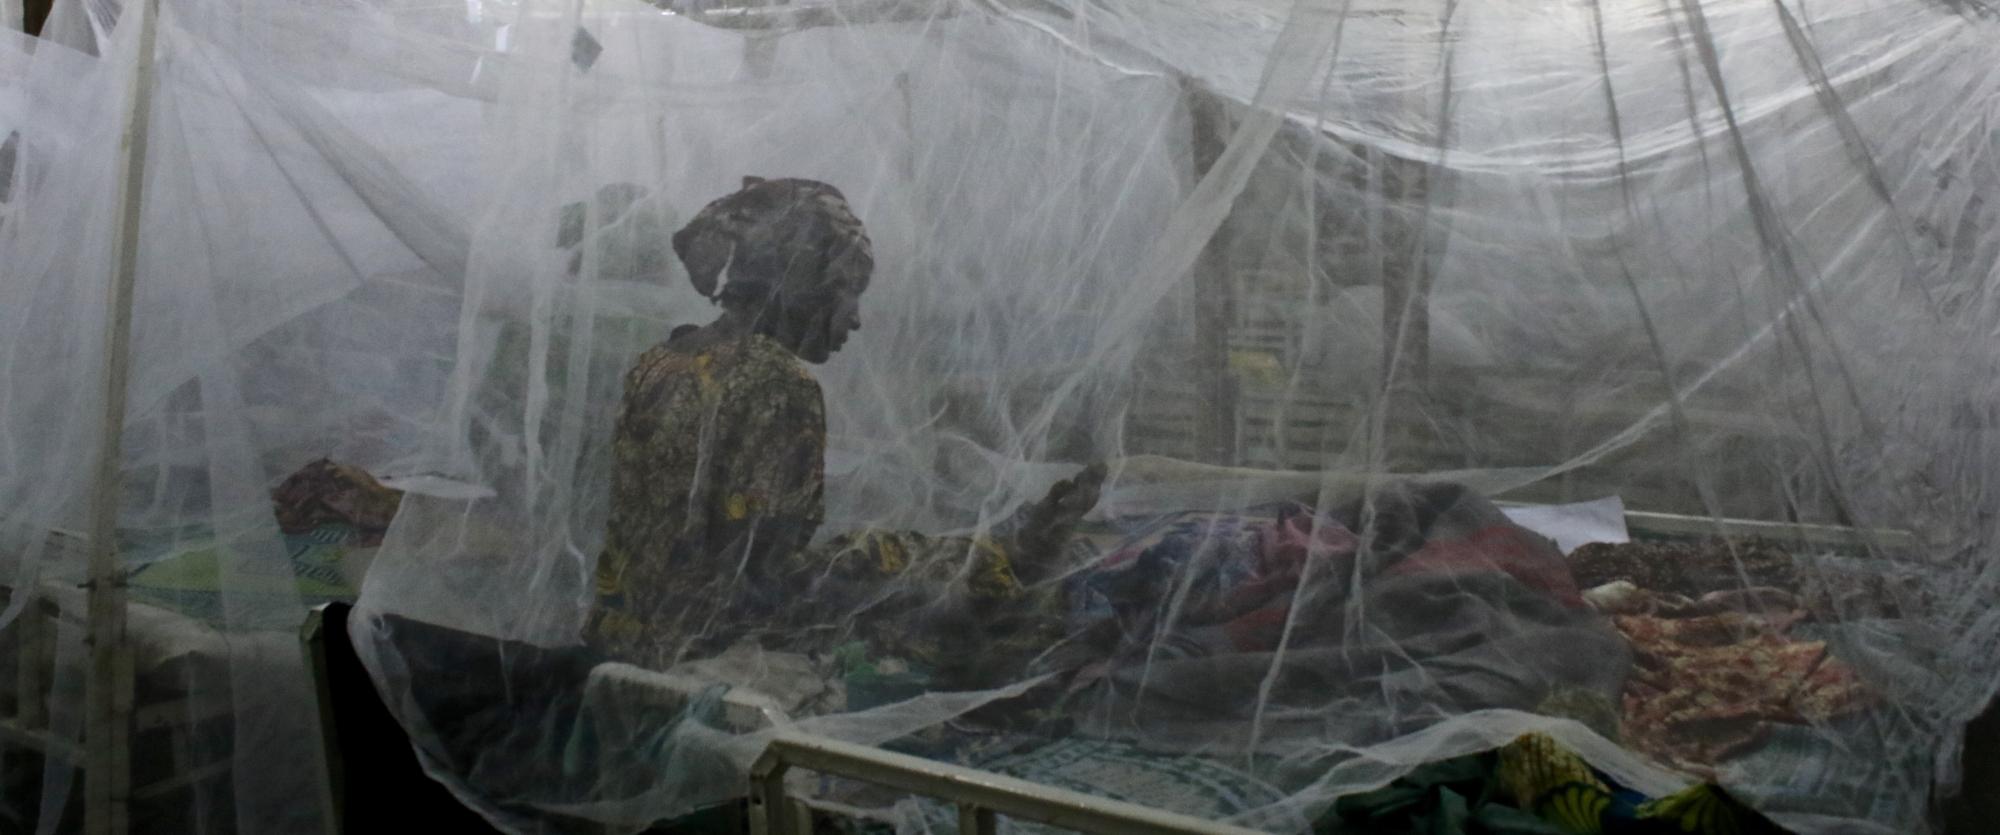 Depuis 2005, MSF soutient le ministère de la Santé publique à Magaria, dans la région de Zinder, au Niger, afin de réduire le taux de mortalité des enfants de moins de cinq ans.